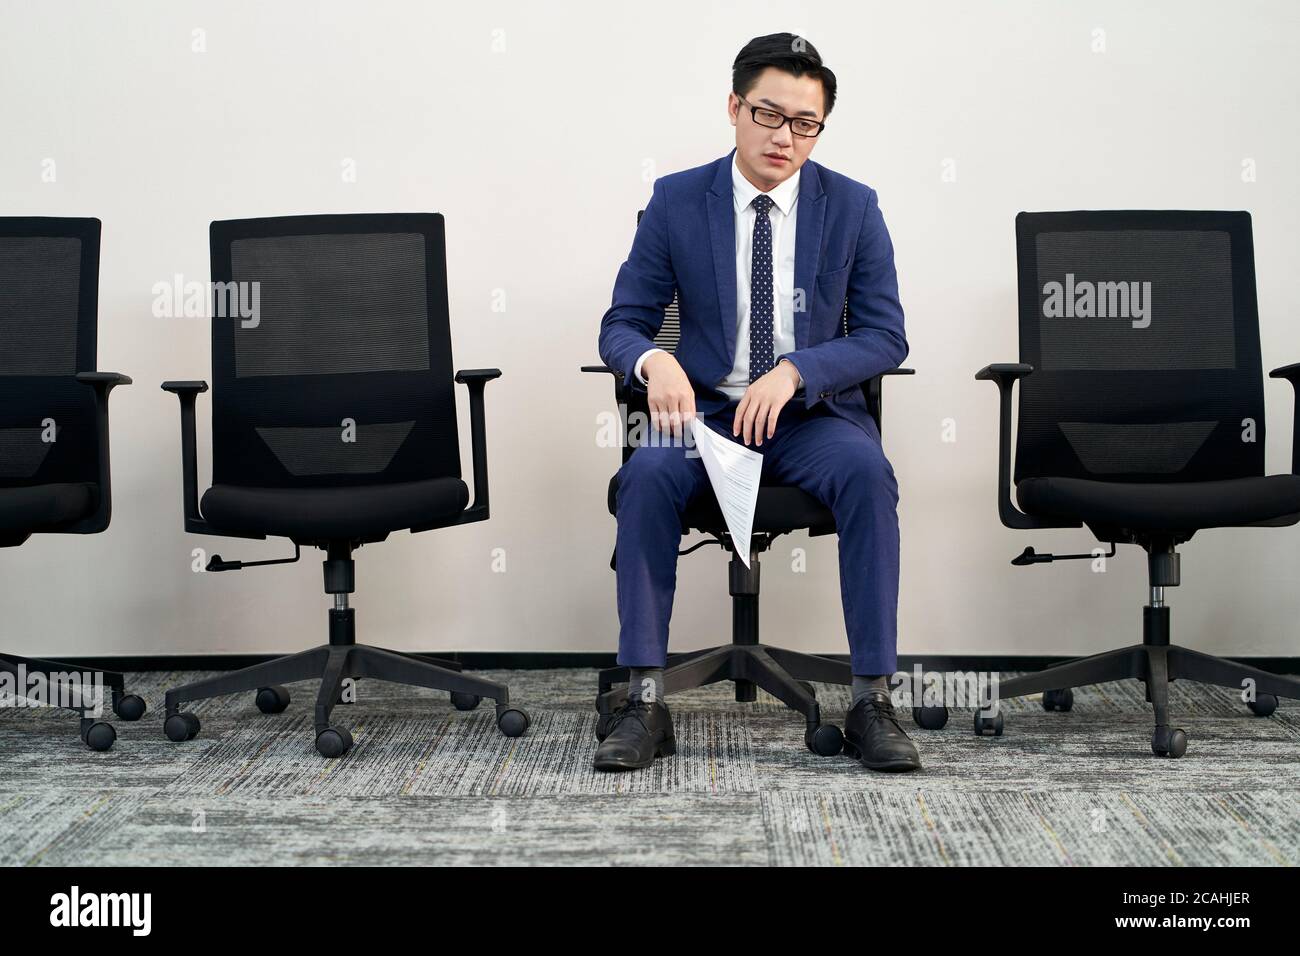 Junge männliche asiatische Arbeitssuchende im Stuhl sitzend scheint frustriert und besiegt zu sein Stockfoto